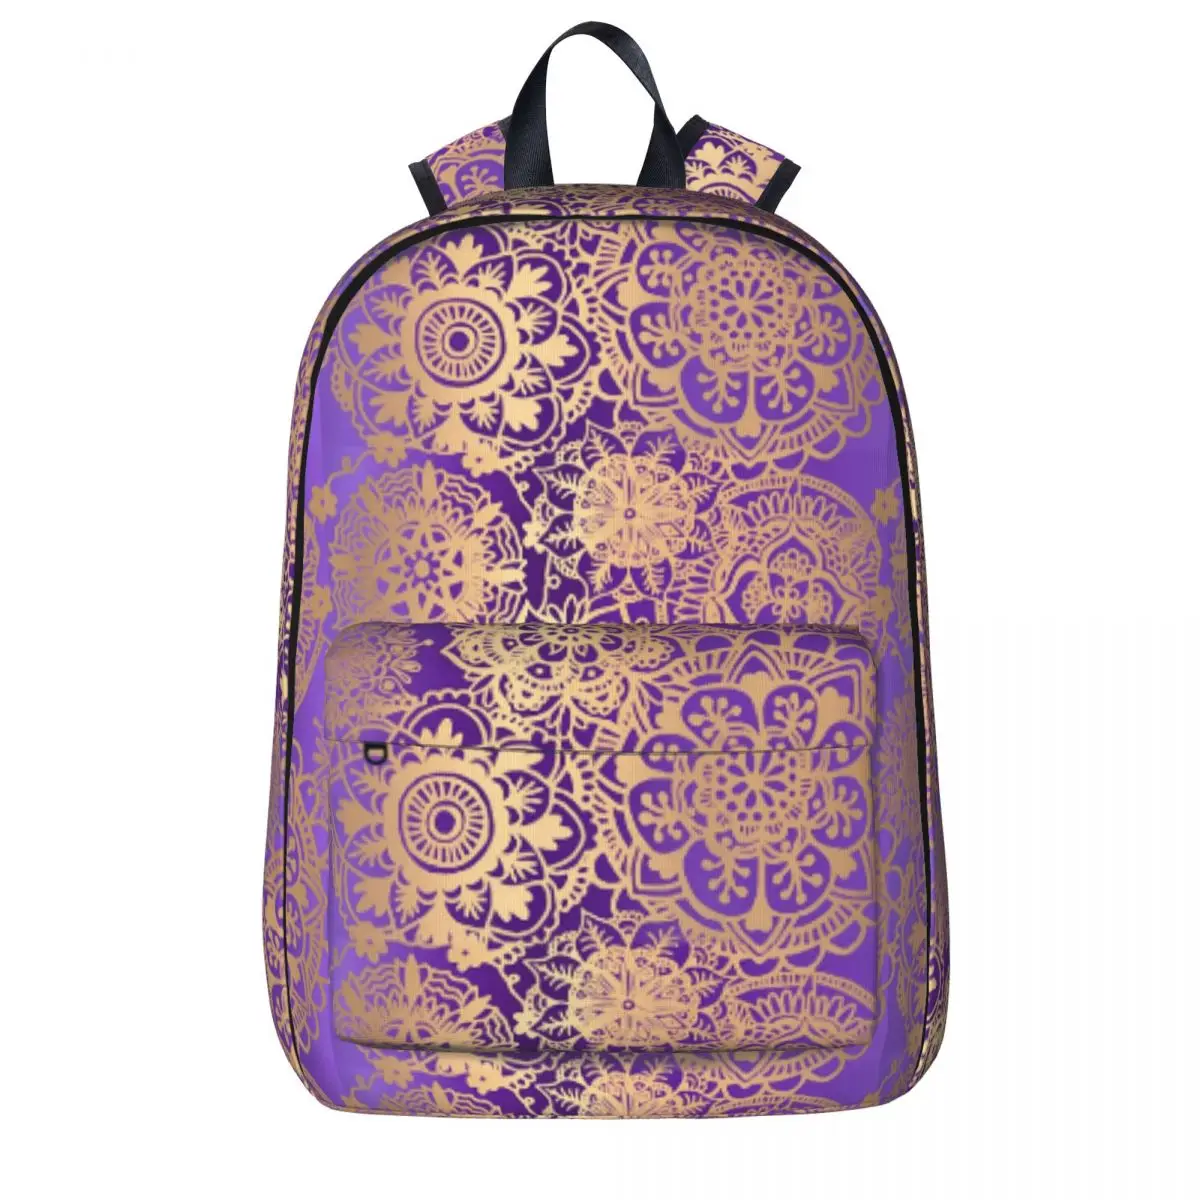 

Рюкзак в стиле бохо с мандалой, фиолетовый и золотистый цвет, Большой Школьный Рюкзак Для Езды На Велосипеде для мальчиков, индивидуальный рюкзак